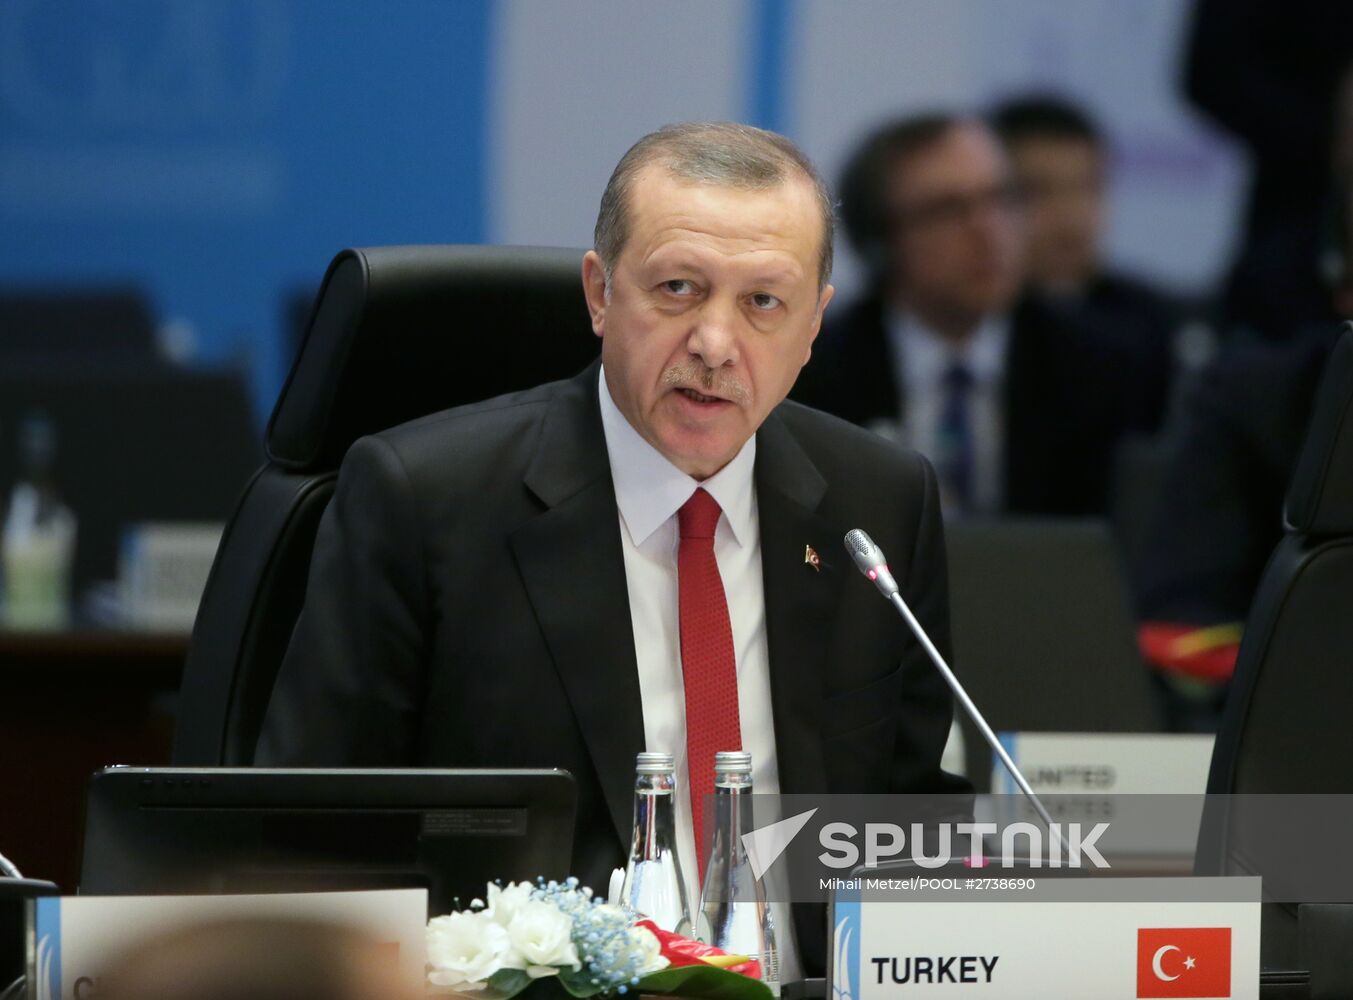 Vladimir Putin takes part in G20 summit in Turkey